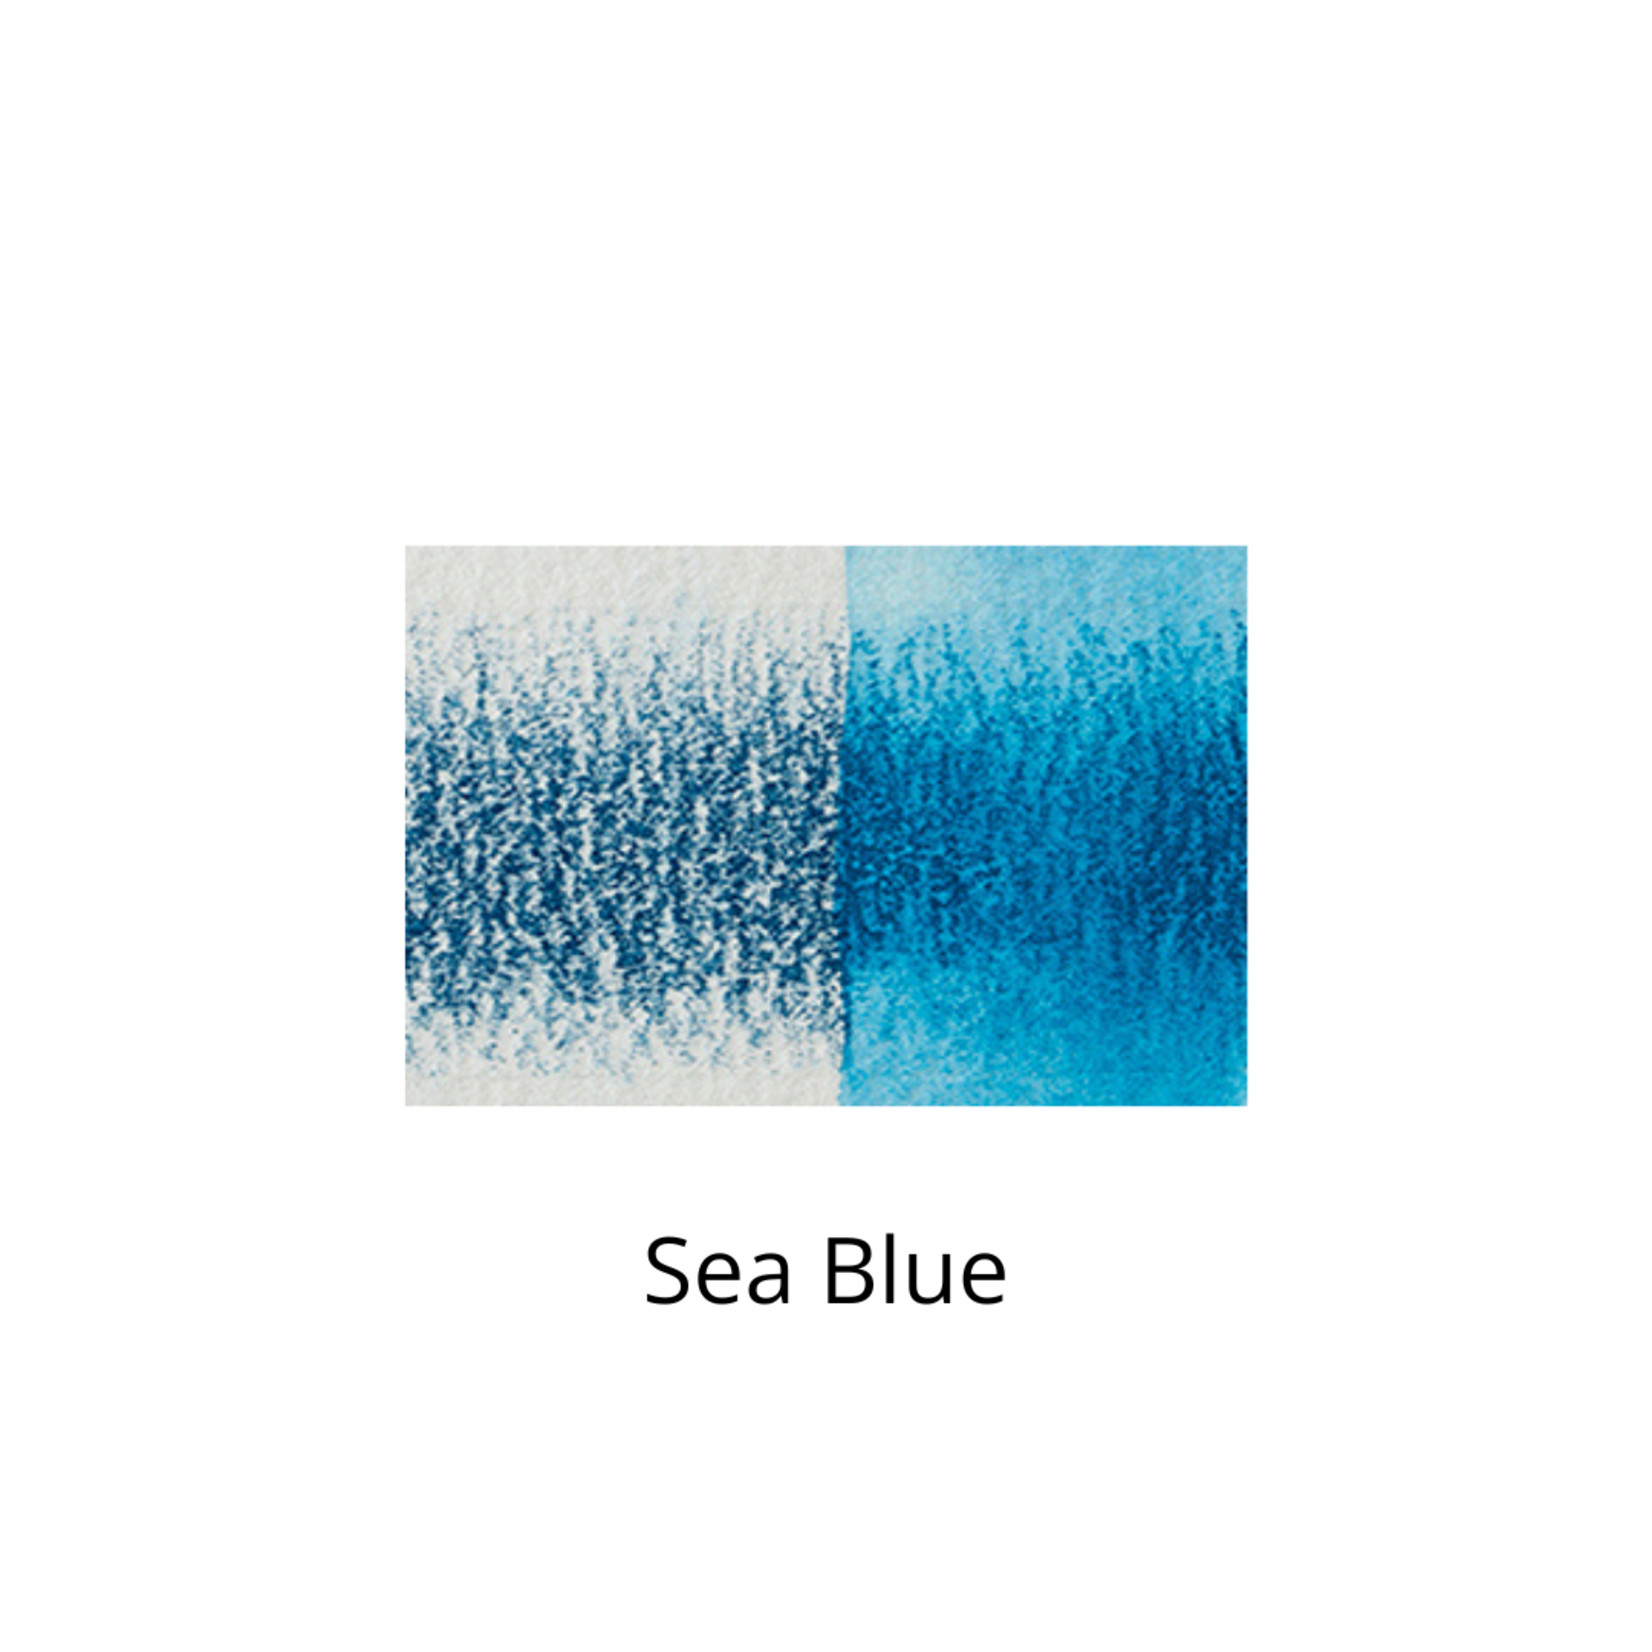 DERWENT DERWENT INKTENSE PENCIL 1200 SEA BLUE